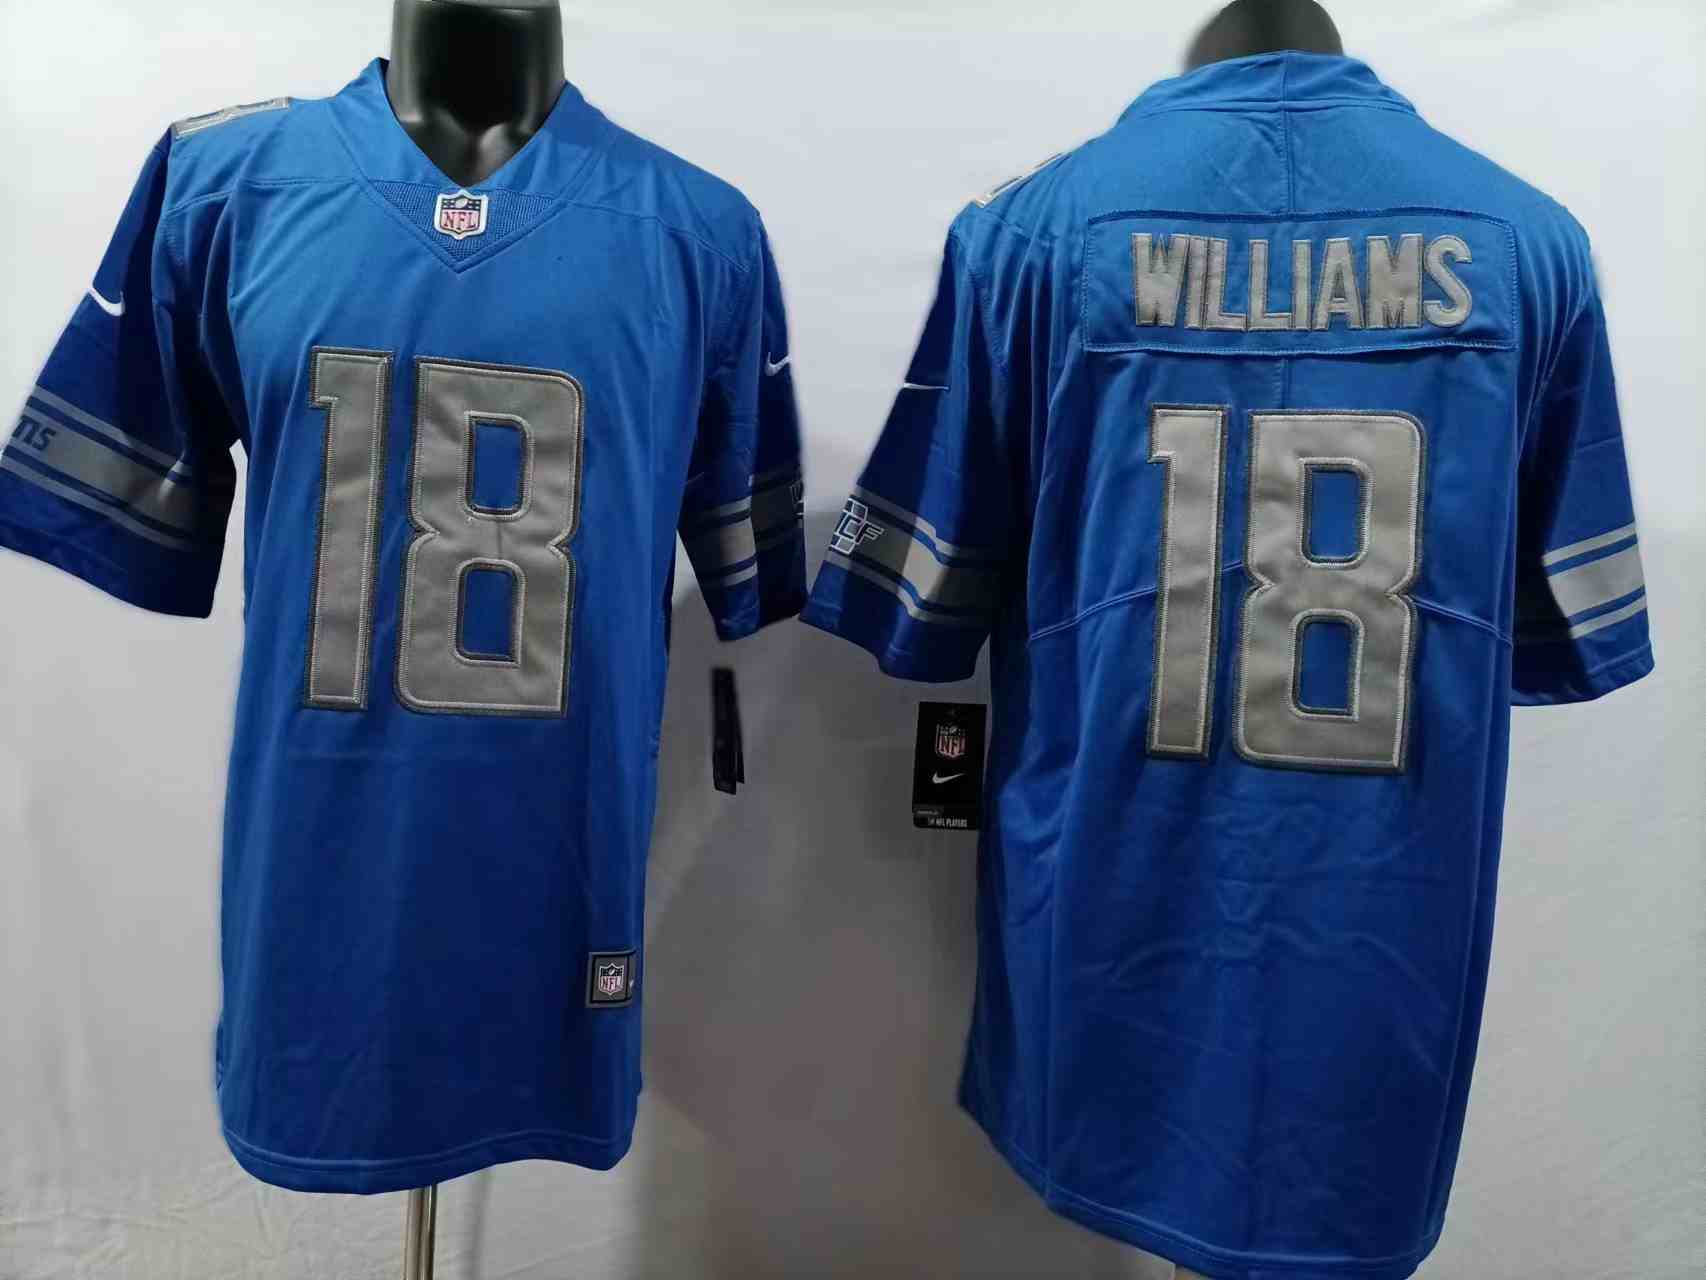 Men's Detroit Lions #18 Jameson Williams Blue Vapor Untouchable Limited Stitched Jersey